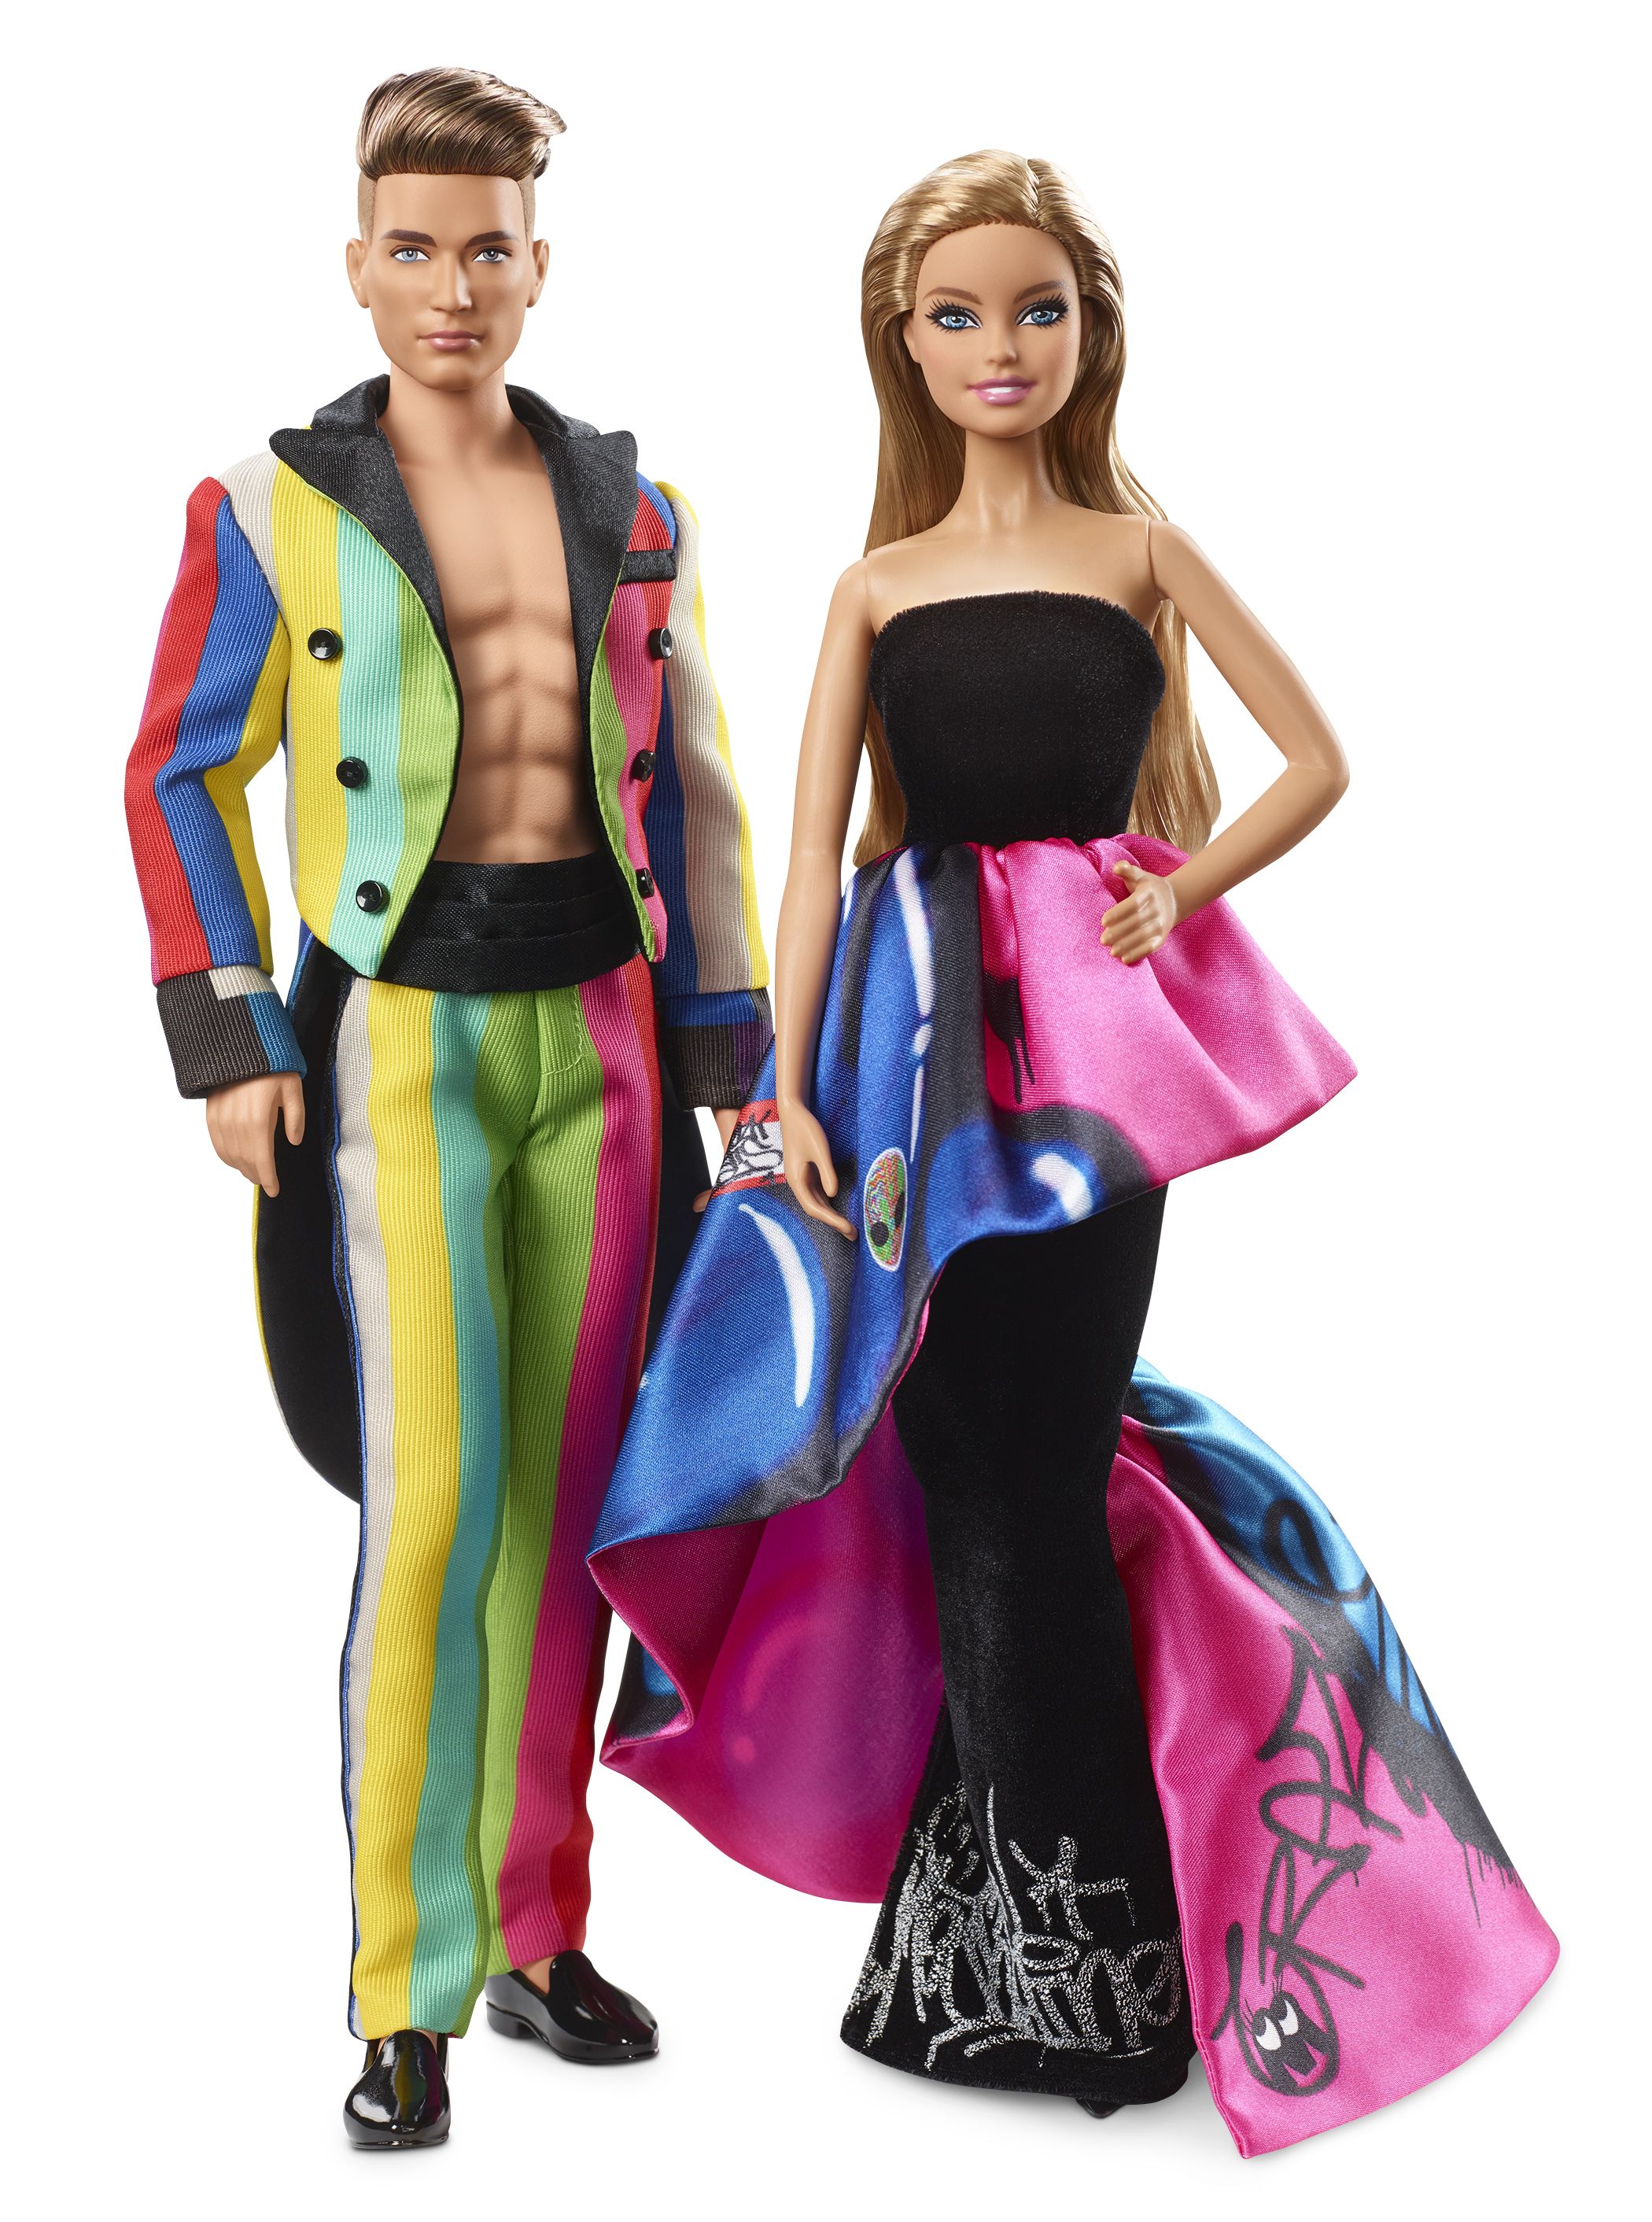 Moschino e Barbie annunciano lultima collaborazione